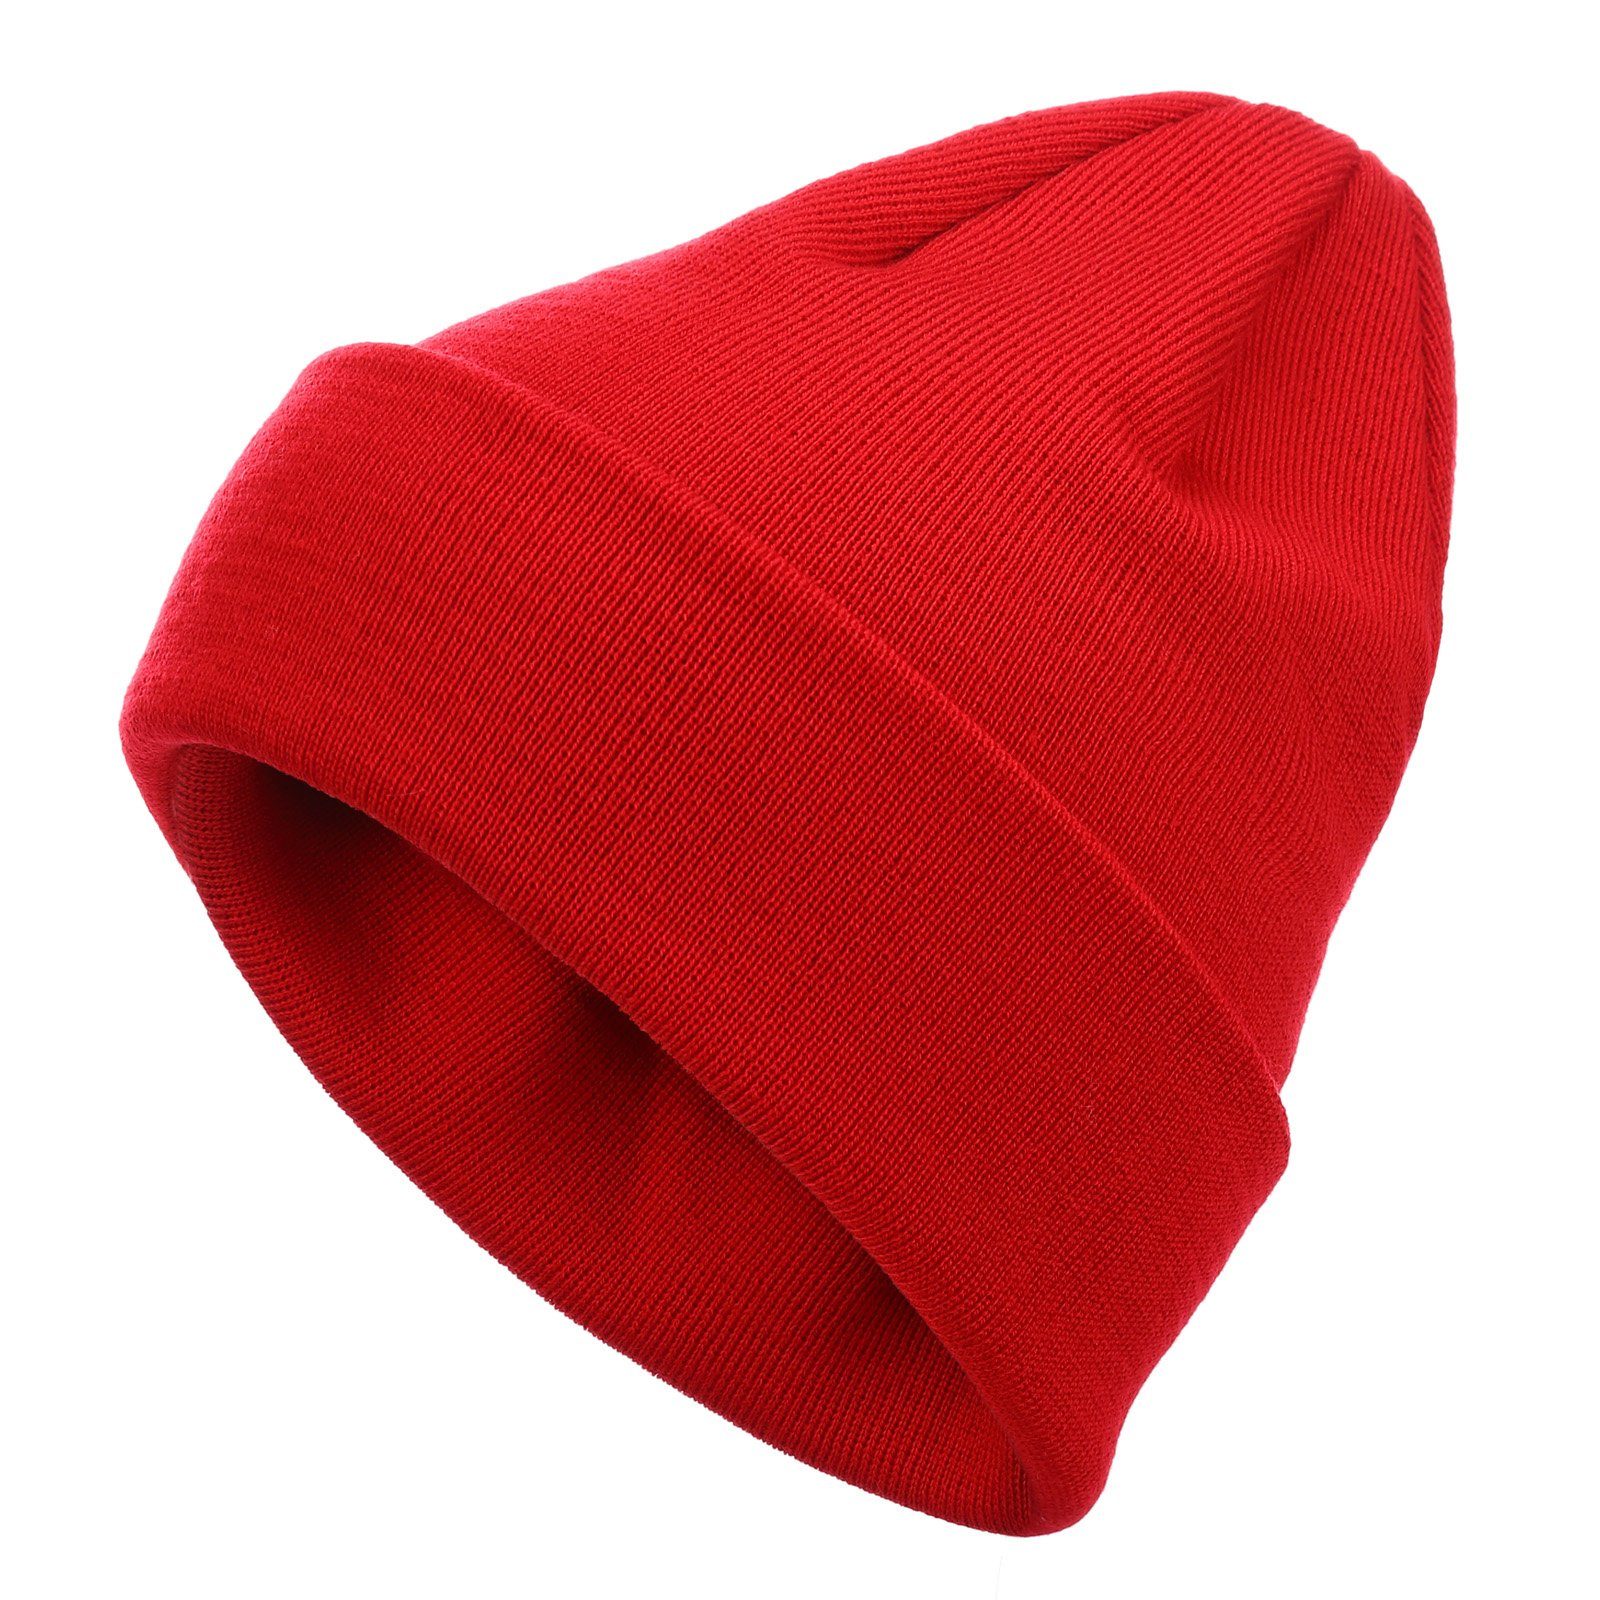 modAS Strickmütze Unisex Wollmütze aus Merinowolle - Mütze in doppellagiger Qualität (20) rot